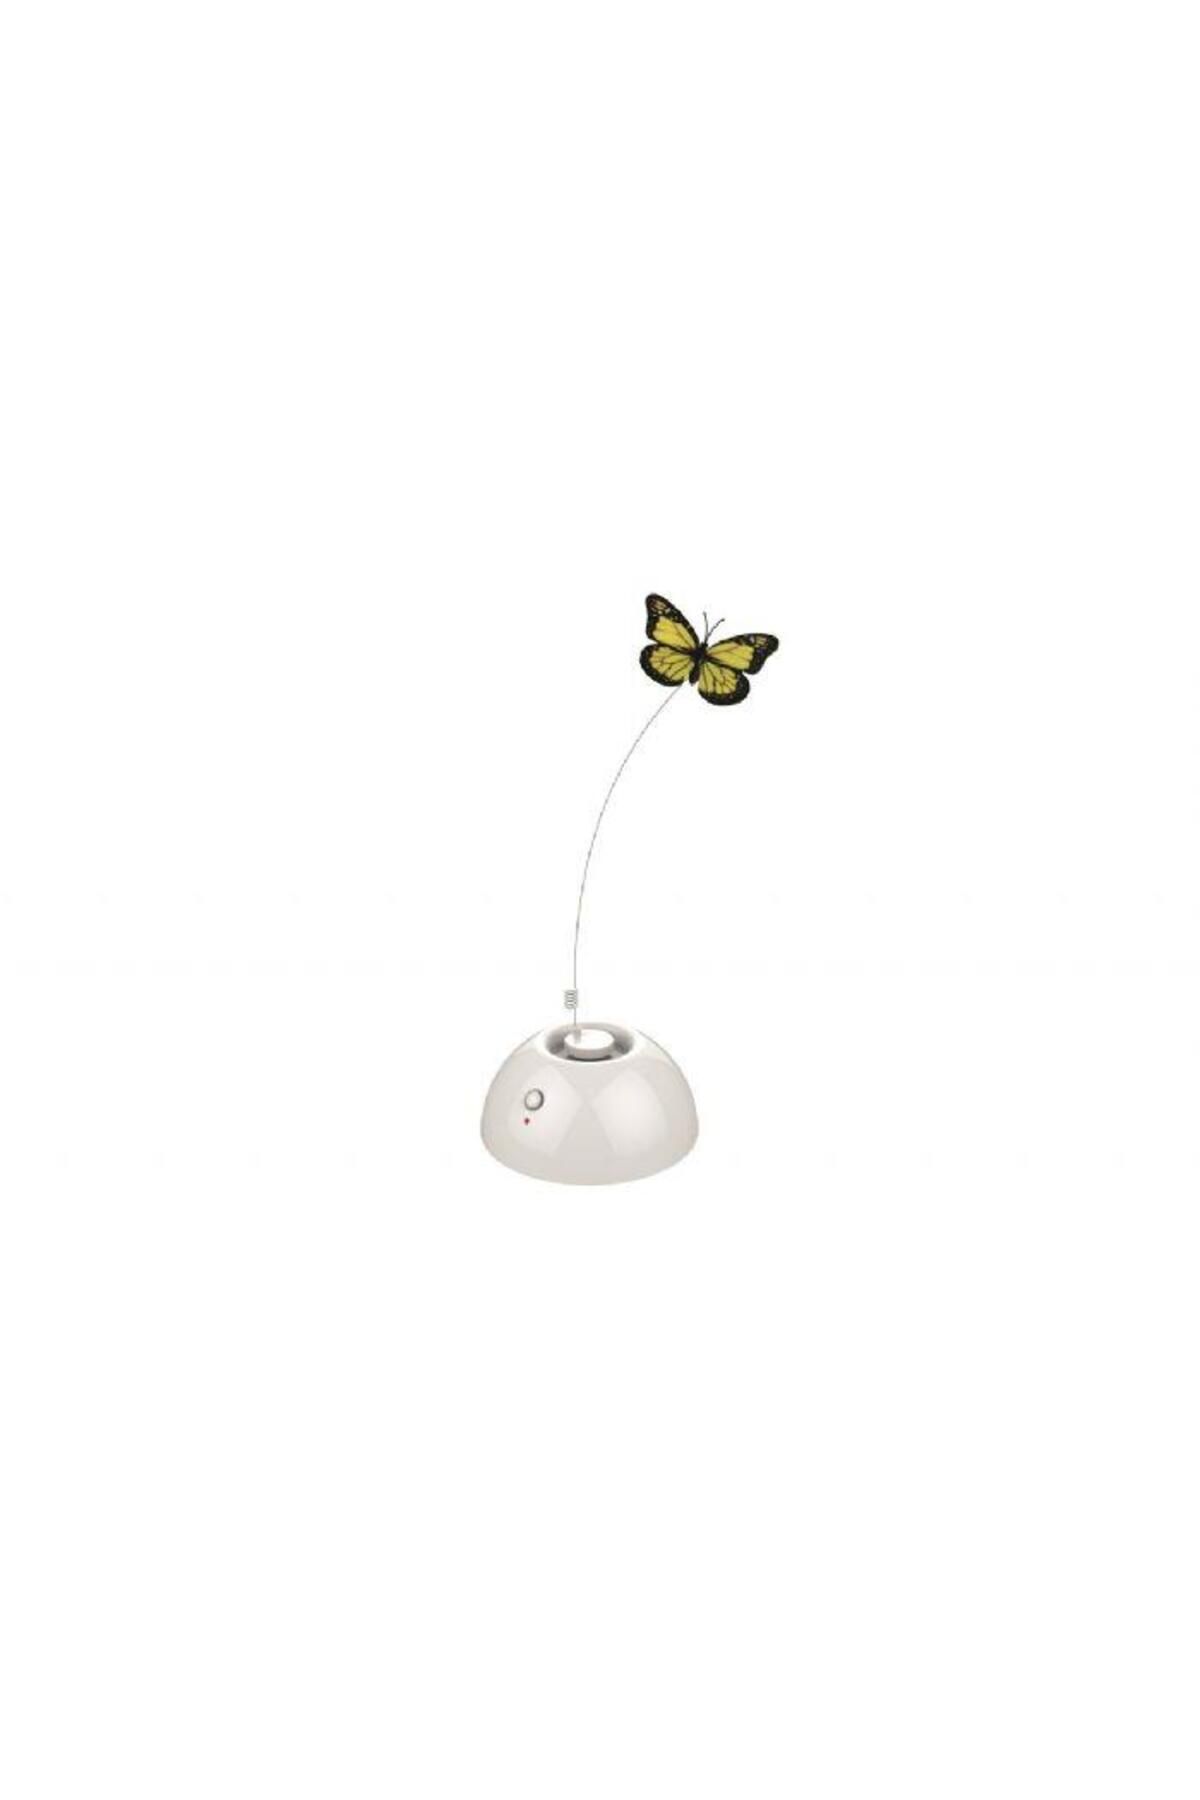 M-PETS Dancıng Butterfly Interaktif Kedi Oyuncağı White 20617001